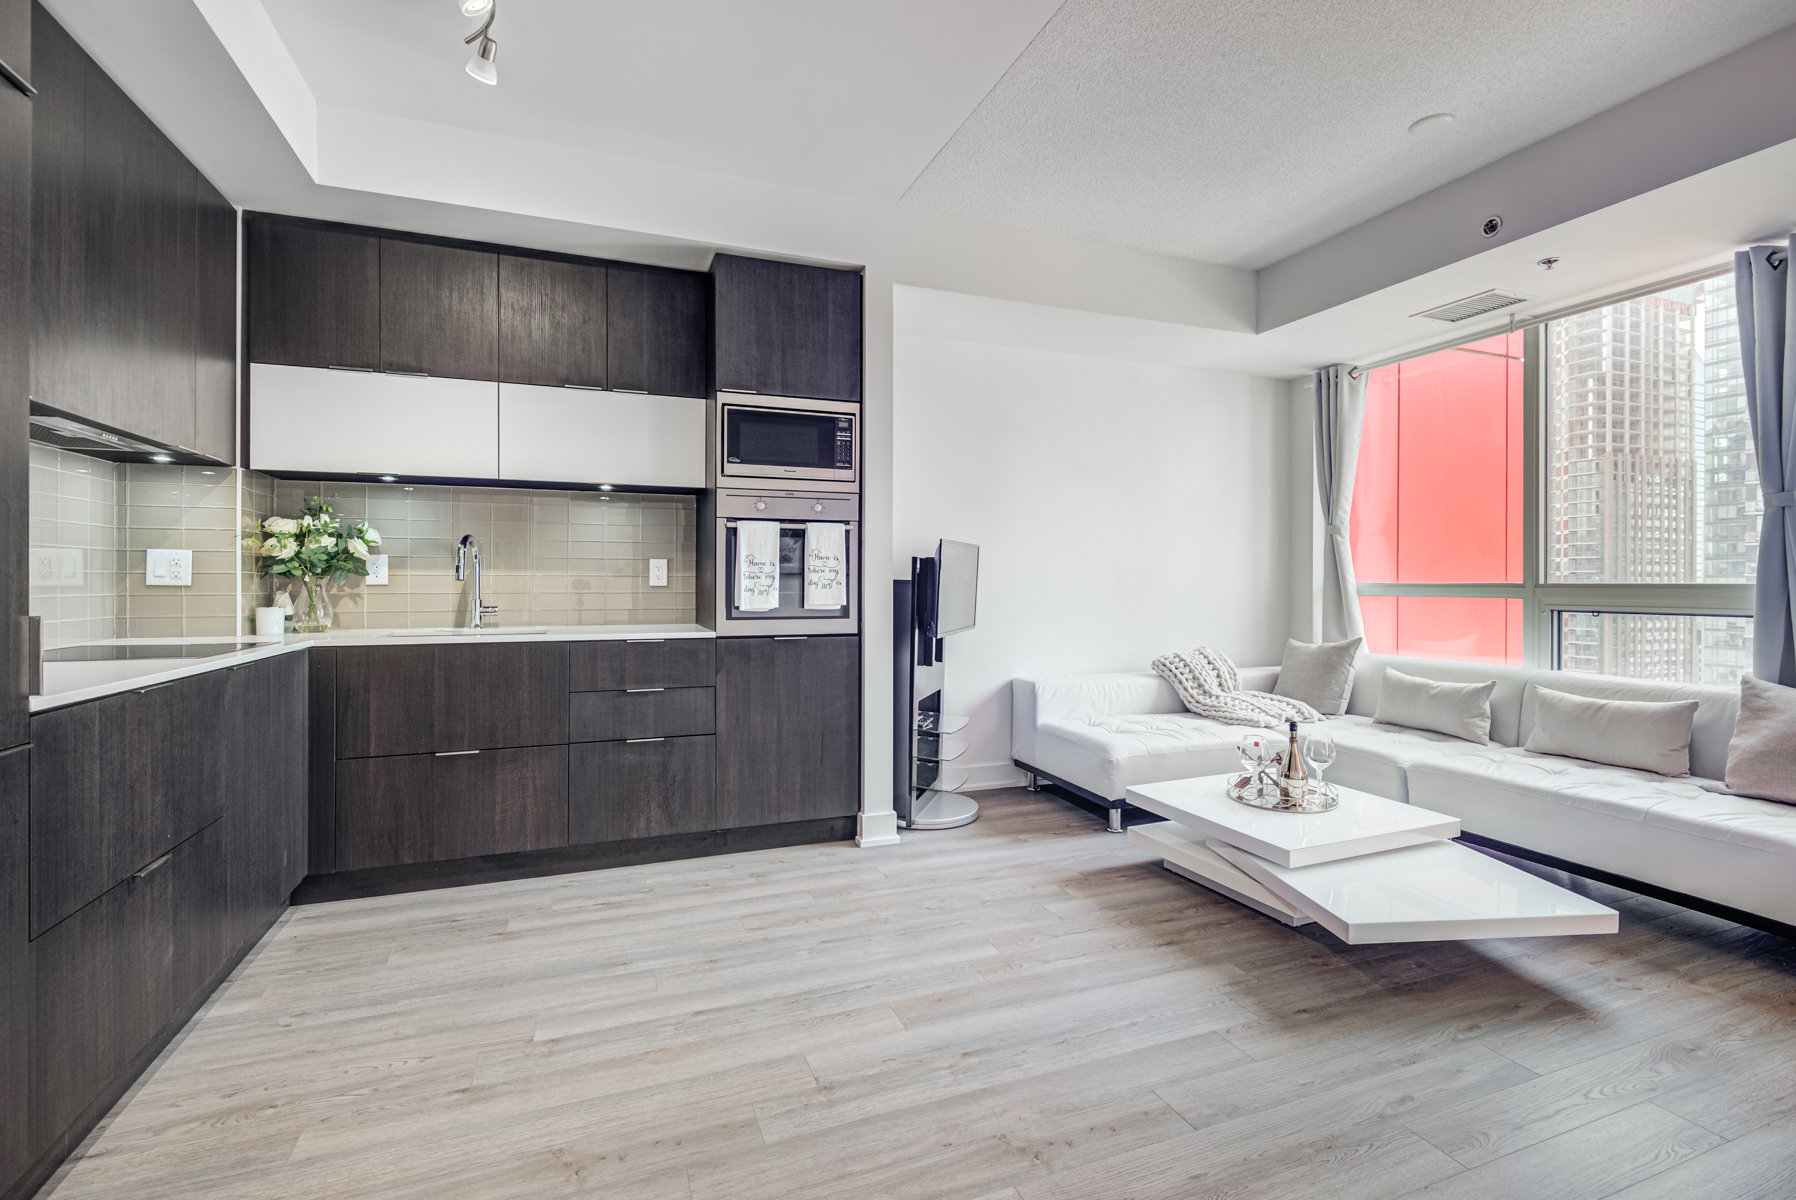 Sleek and elegant condo kitchen with dark cabinets.